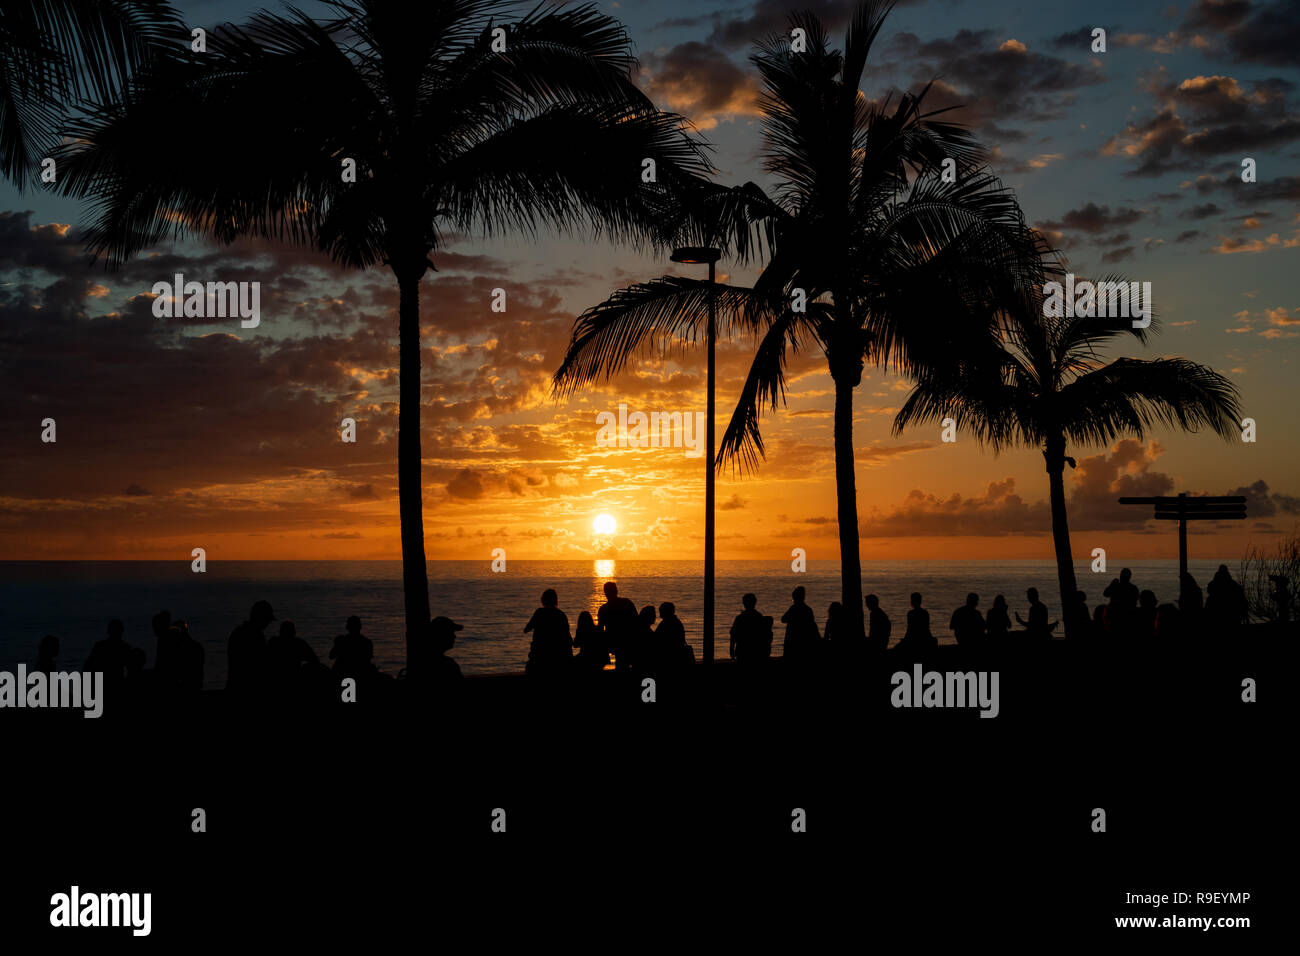 Silueta de las personas que se benefician de una hermosa puesta de sol sobre el mar abierto Foto de stock